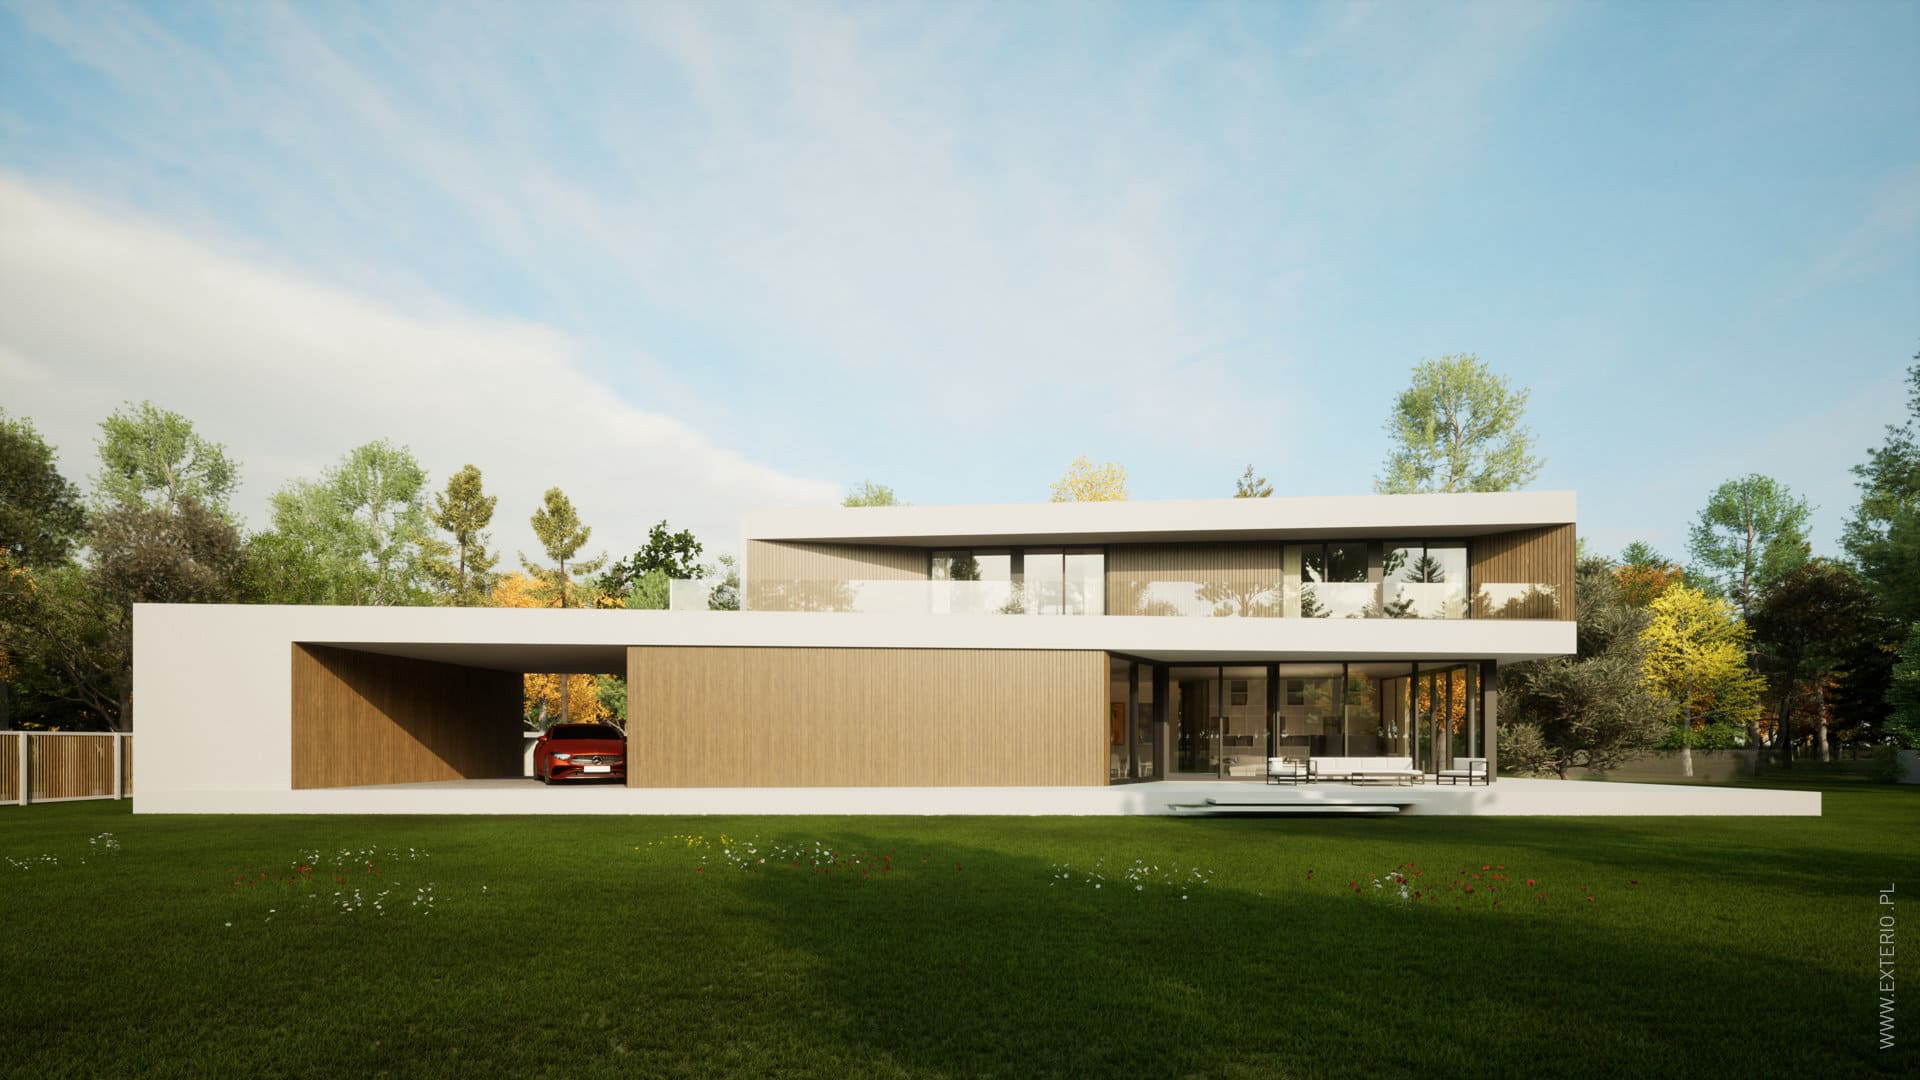 Rezydencja dynamiczna - projekt nowoczesnego domu piętrowego - główne zdjęcie projektu